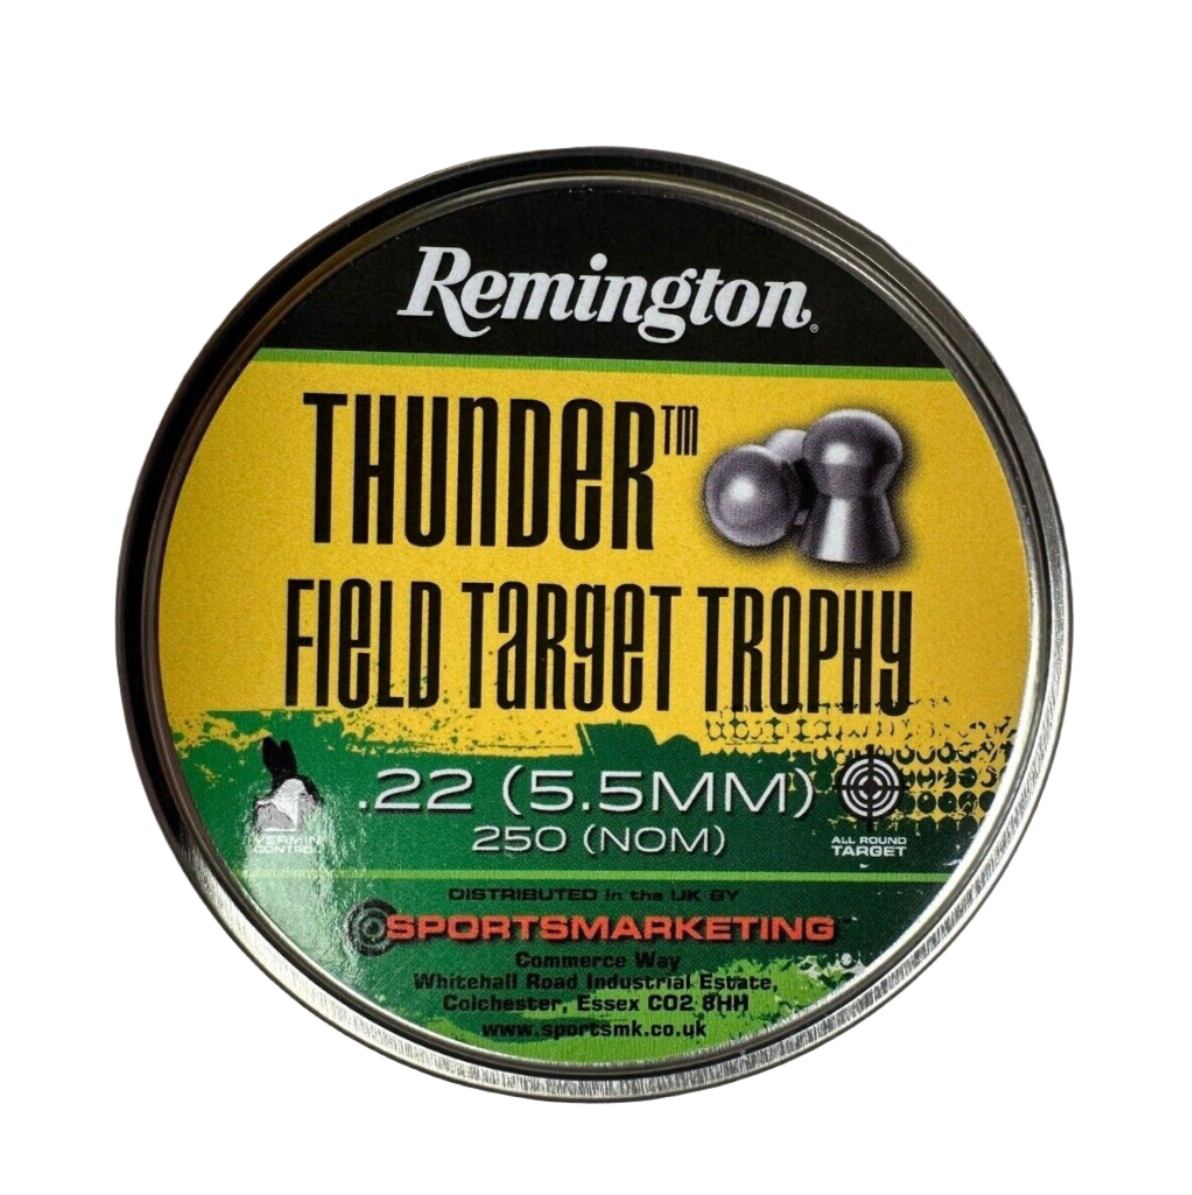 Remington Thunder Field Target Trophy .22 Pellets - 250 Pieces